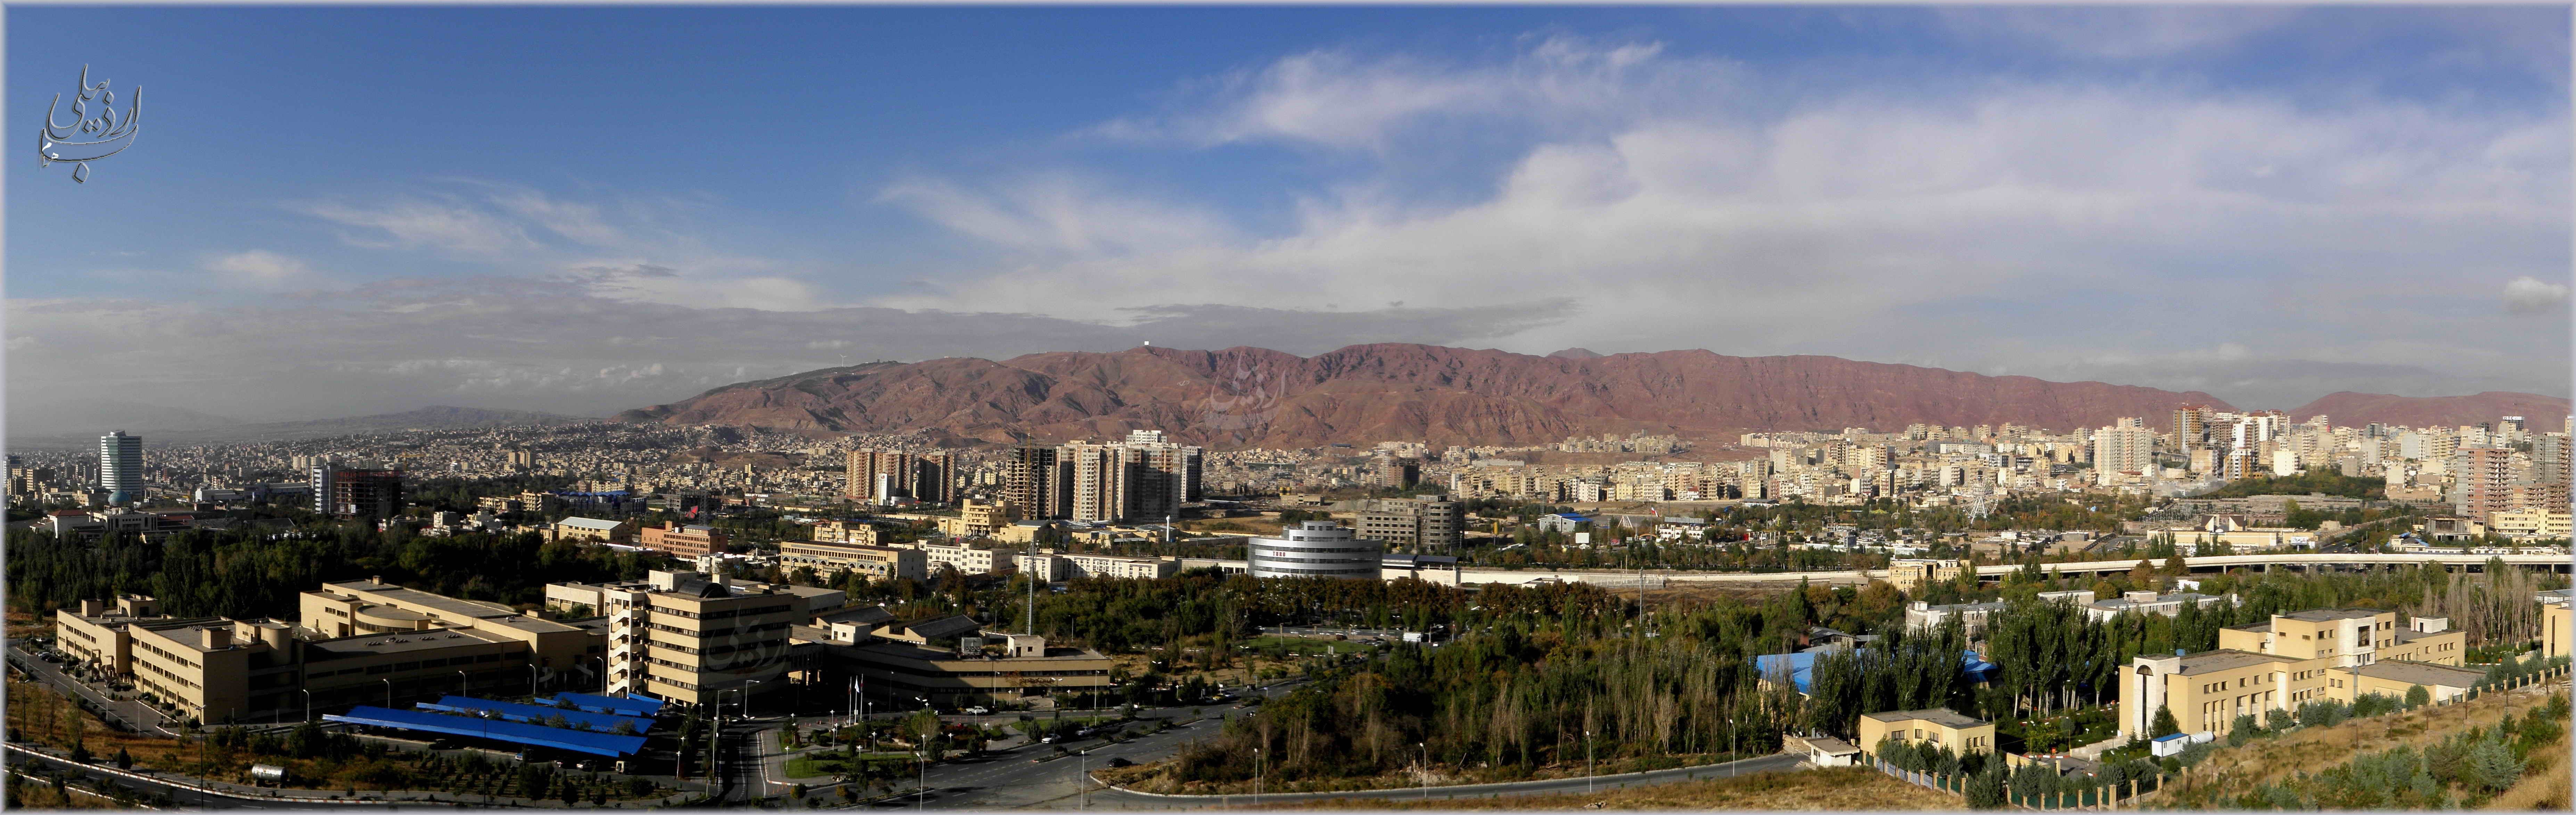 General 7414x2347 Iran cityscape city